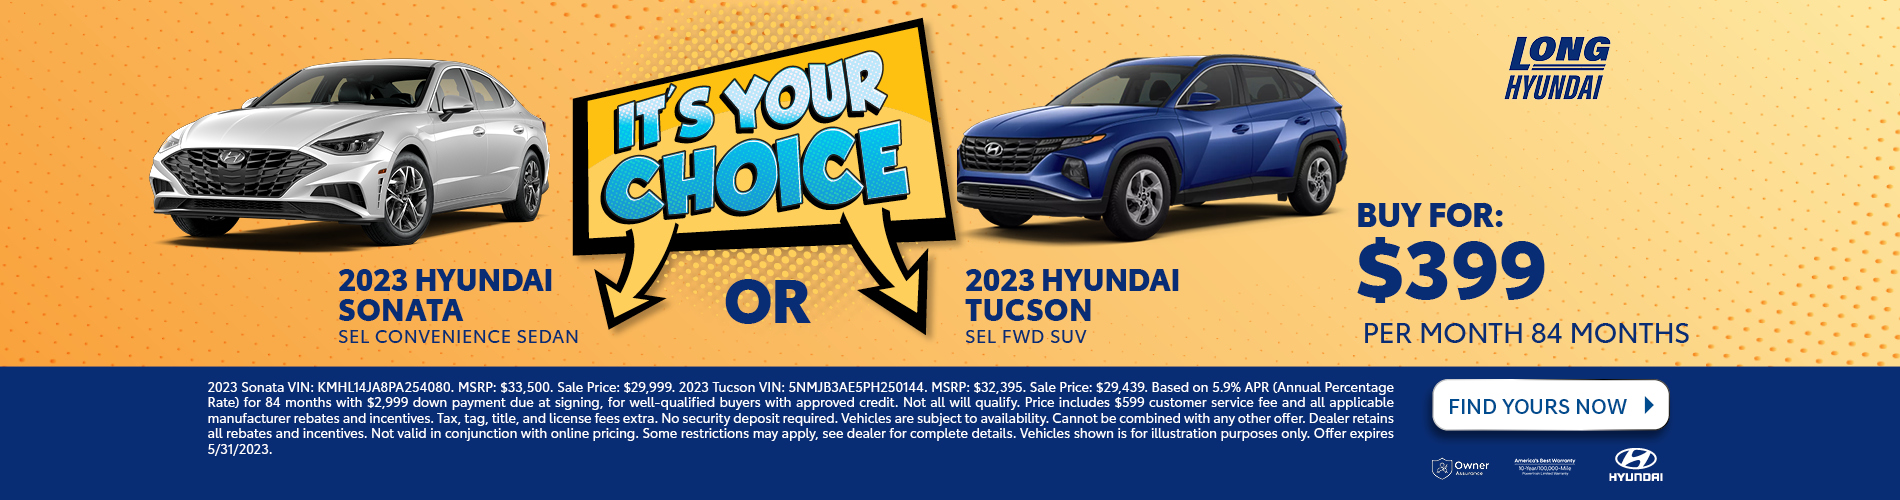 2023 Hyundai Sonata OR 2023 Hyundai Tucson